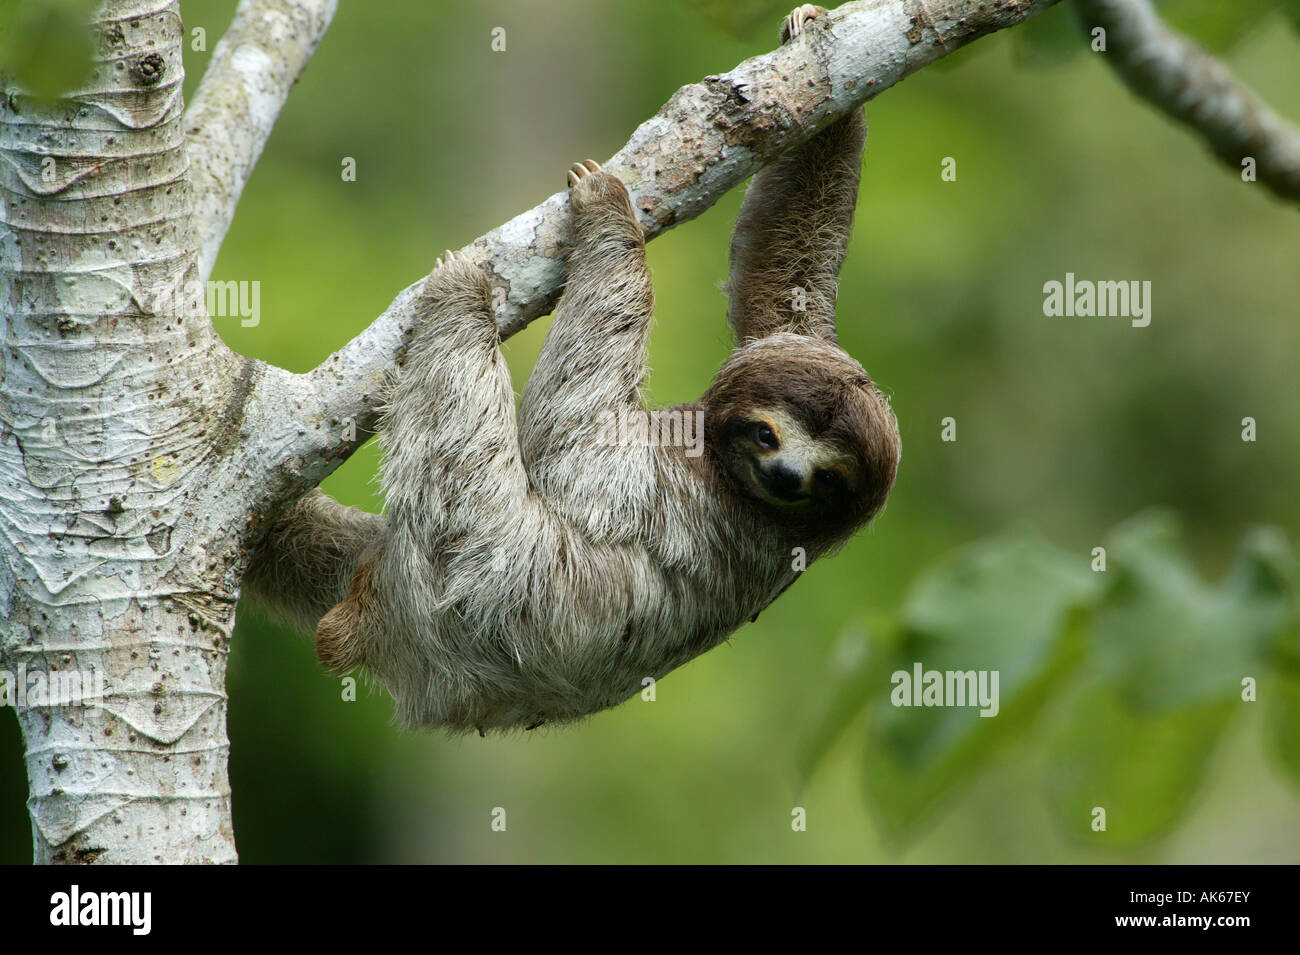 Tris-toed Sloth, Bradypus variegatus, nel parco metropolitano della foresta pluviale di 265 ettari, Città di Panama, Repubblica di Panama, America Centrale. Foto Stock